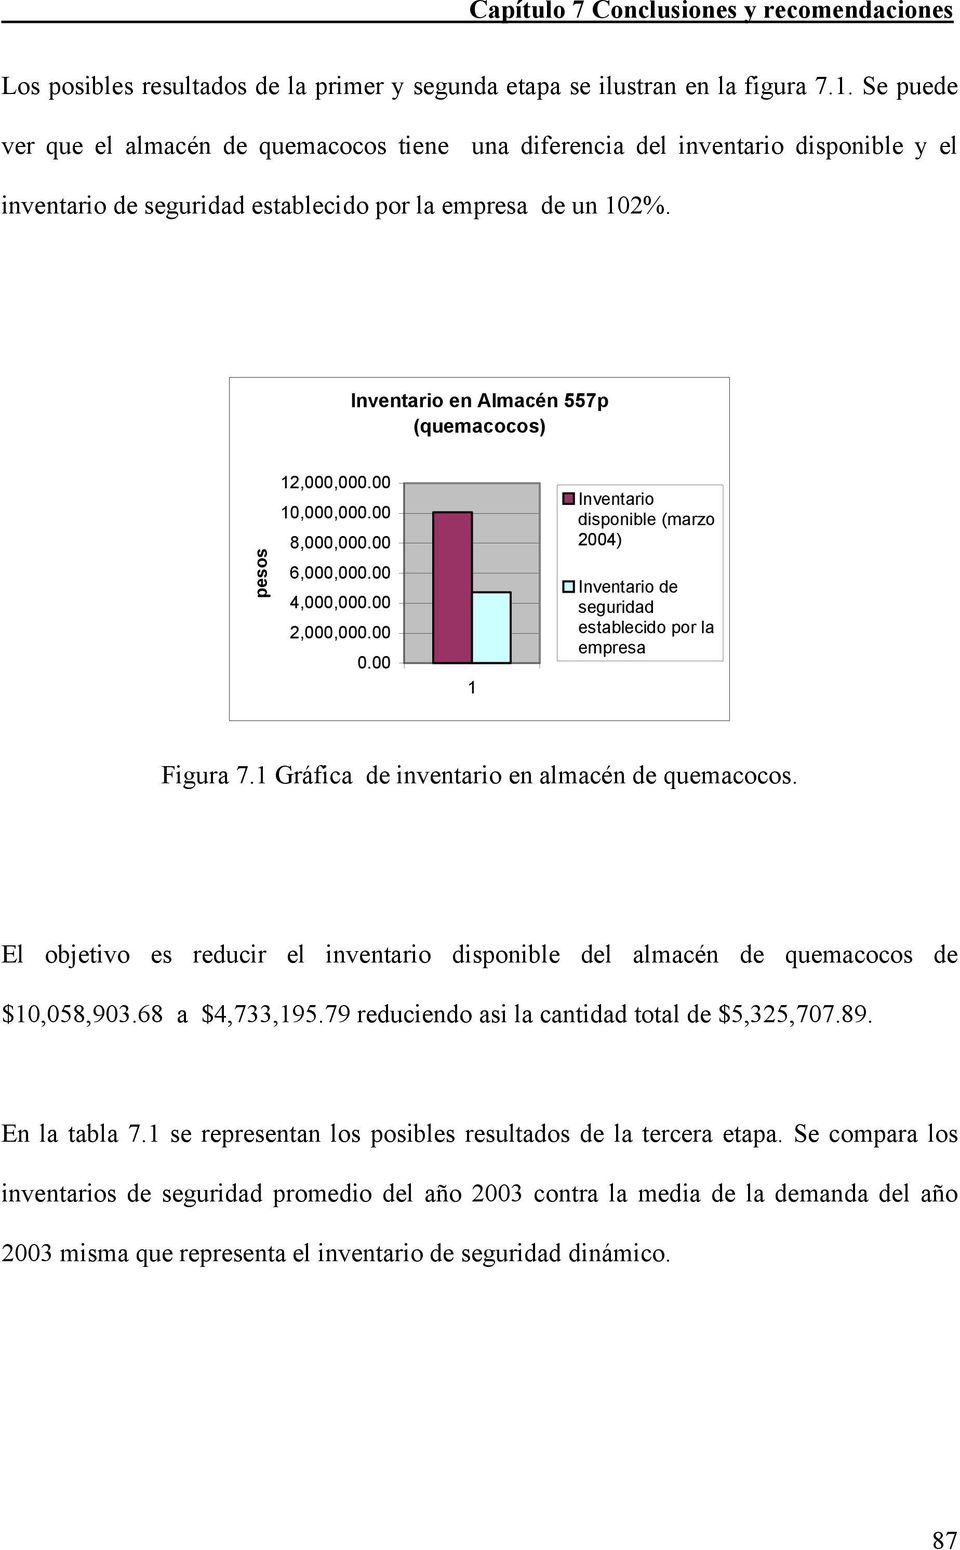 Inventario en Almacén 557p (quemacocos) pesos 12,000,000.00 10,000,000.00 8,000,000.00 6,000,000.00 4,000,000.00 2,000,000.00 0.